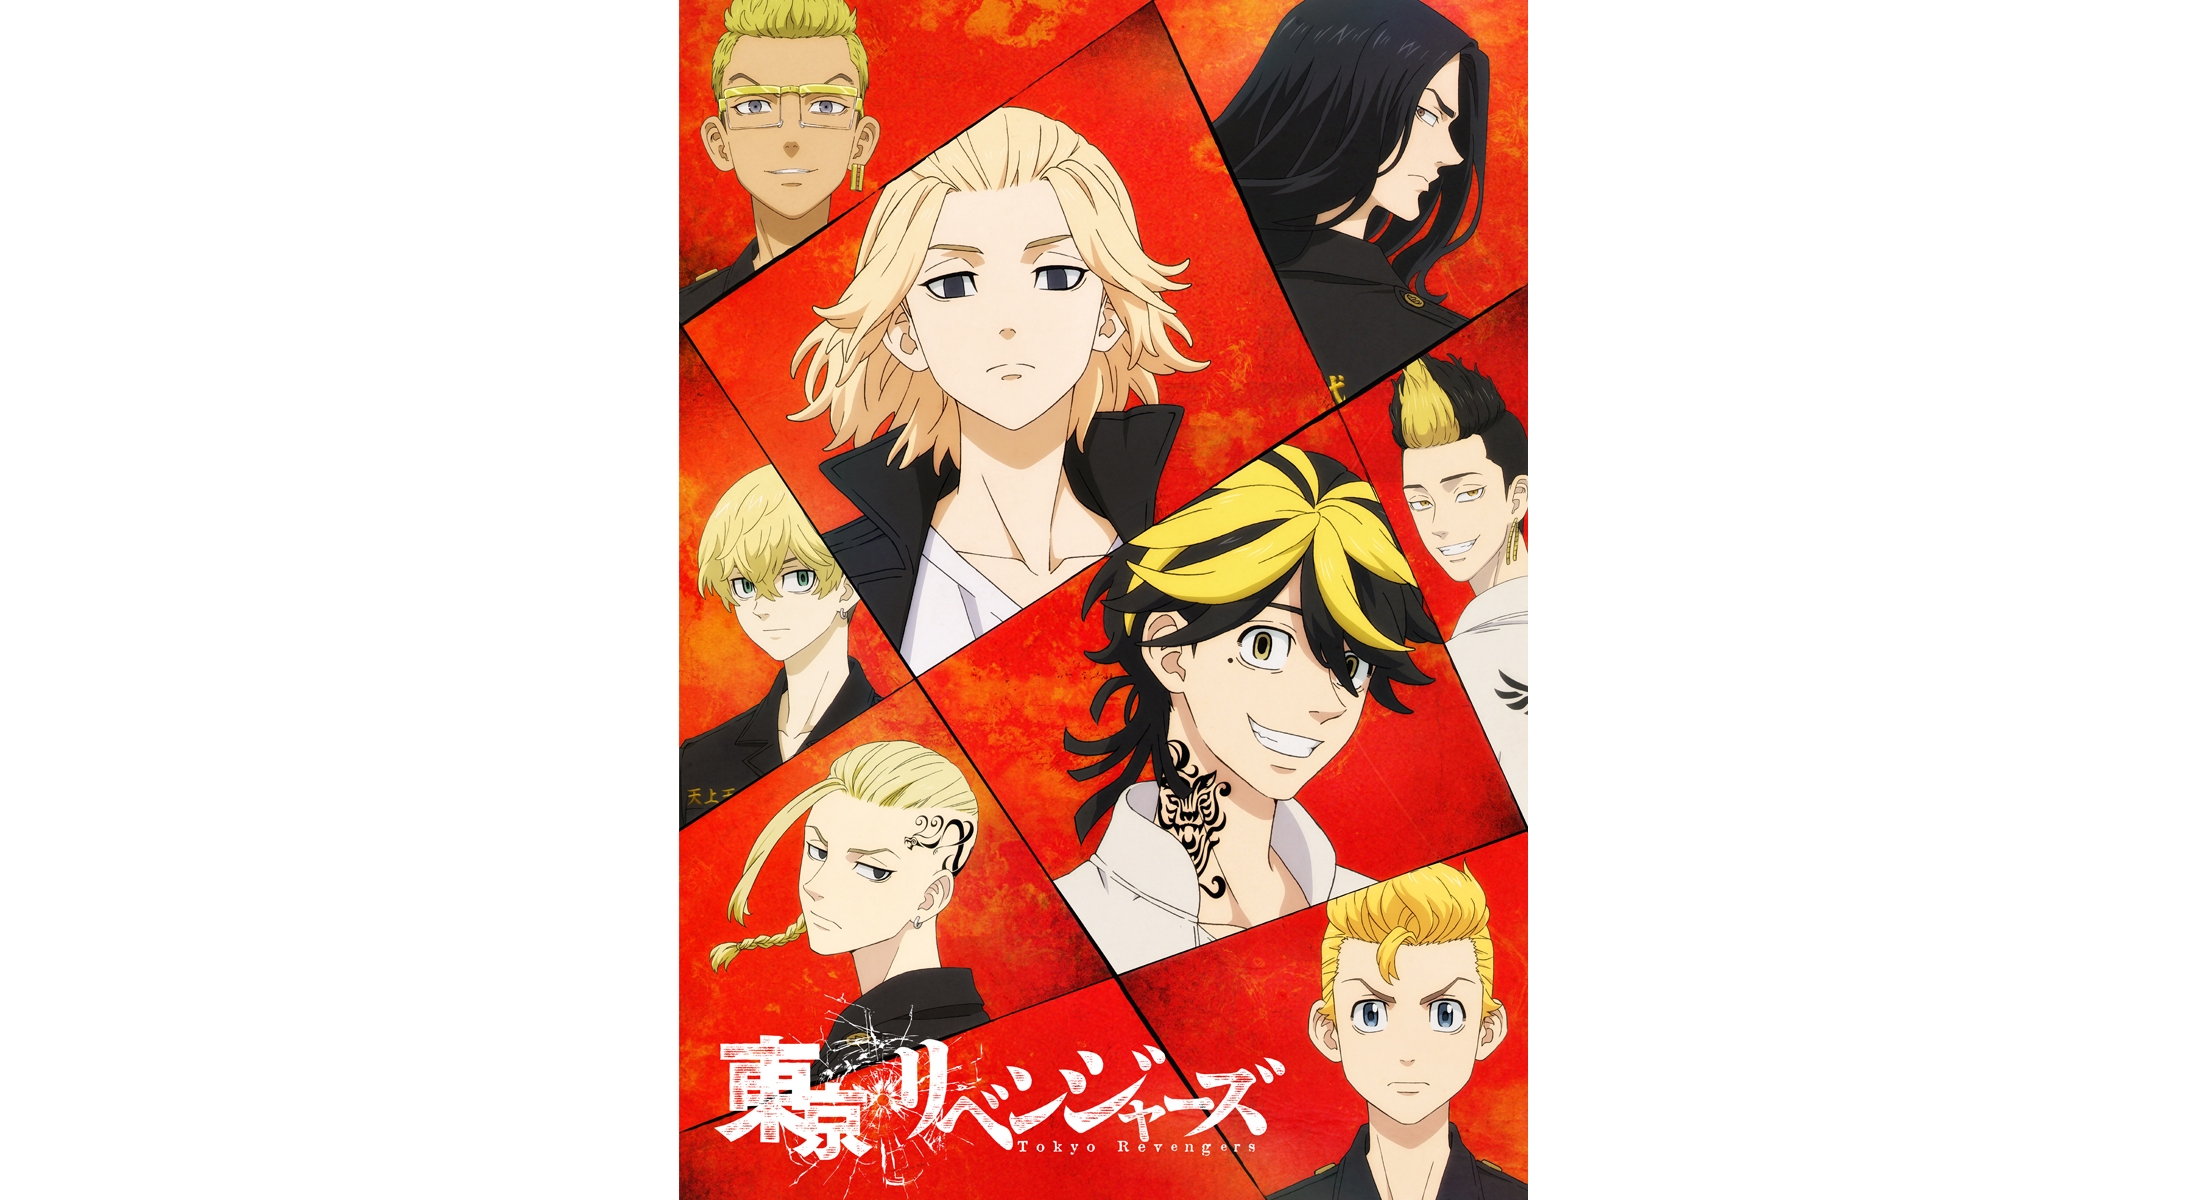 Tokyo Revengers” TEMPORADA 2 ONLINE: se reveló un nuevo póster promocional  para la segunda temporada del anime, Crunchyroll, Manga, Shonen, Perú, México, Japón, Animes